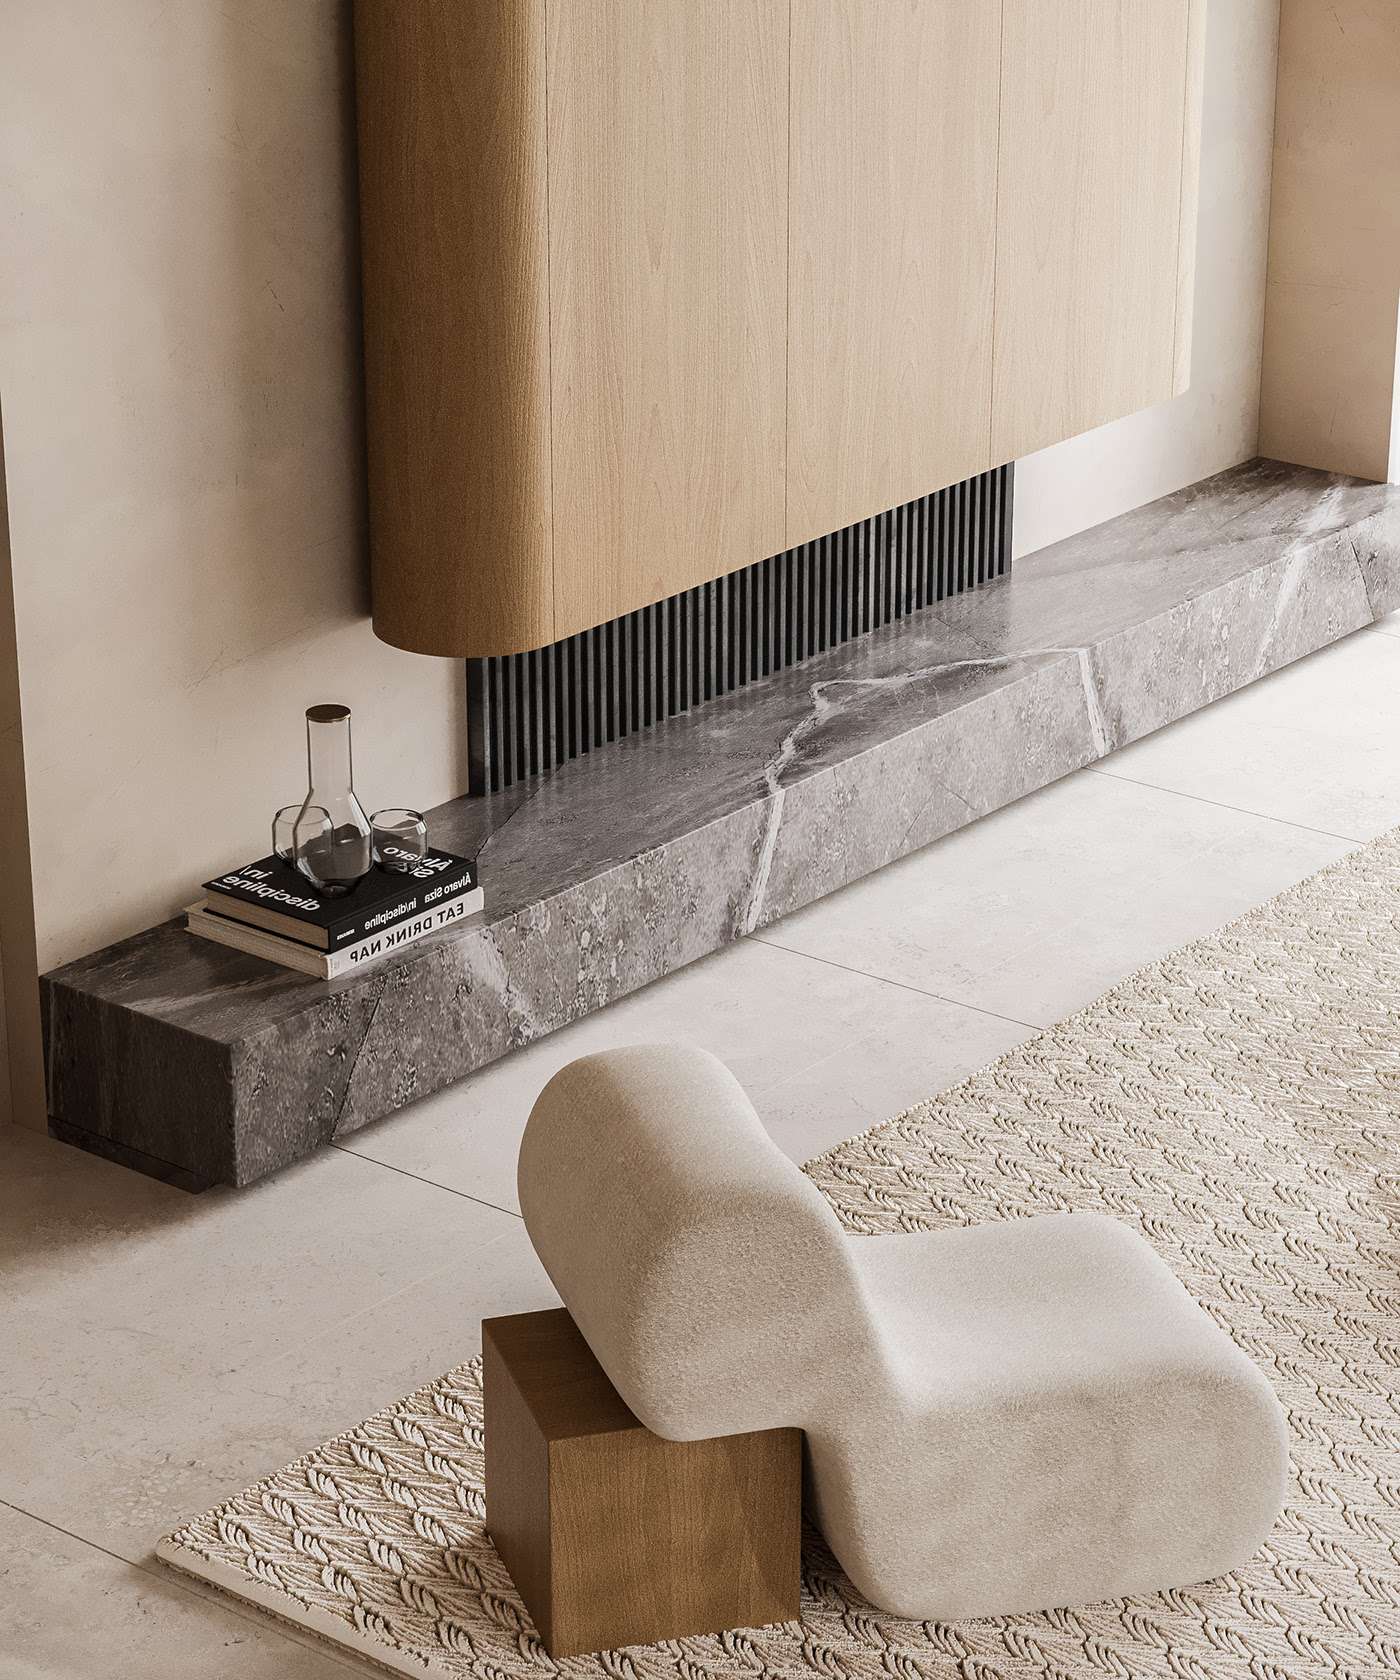 Sử dụng thảm tatami truyền thống kết hợp với gỗ và ánh sáng nhẹ, tạo nên không gian thoải mái và truyền thống